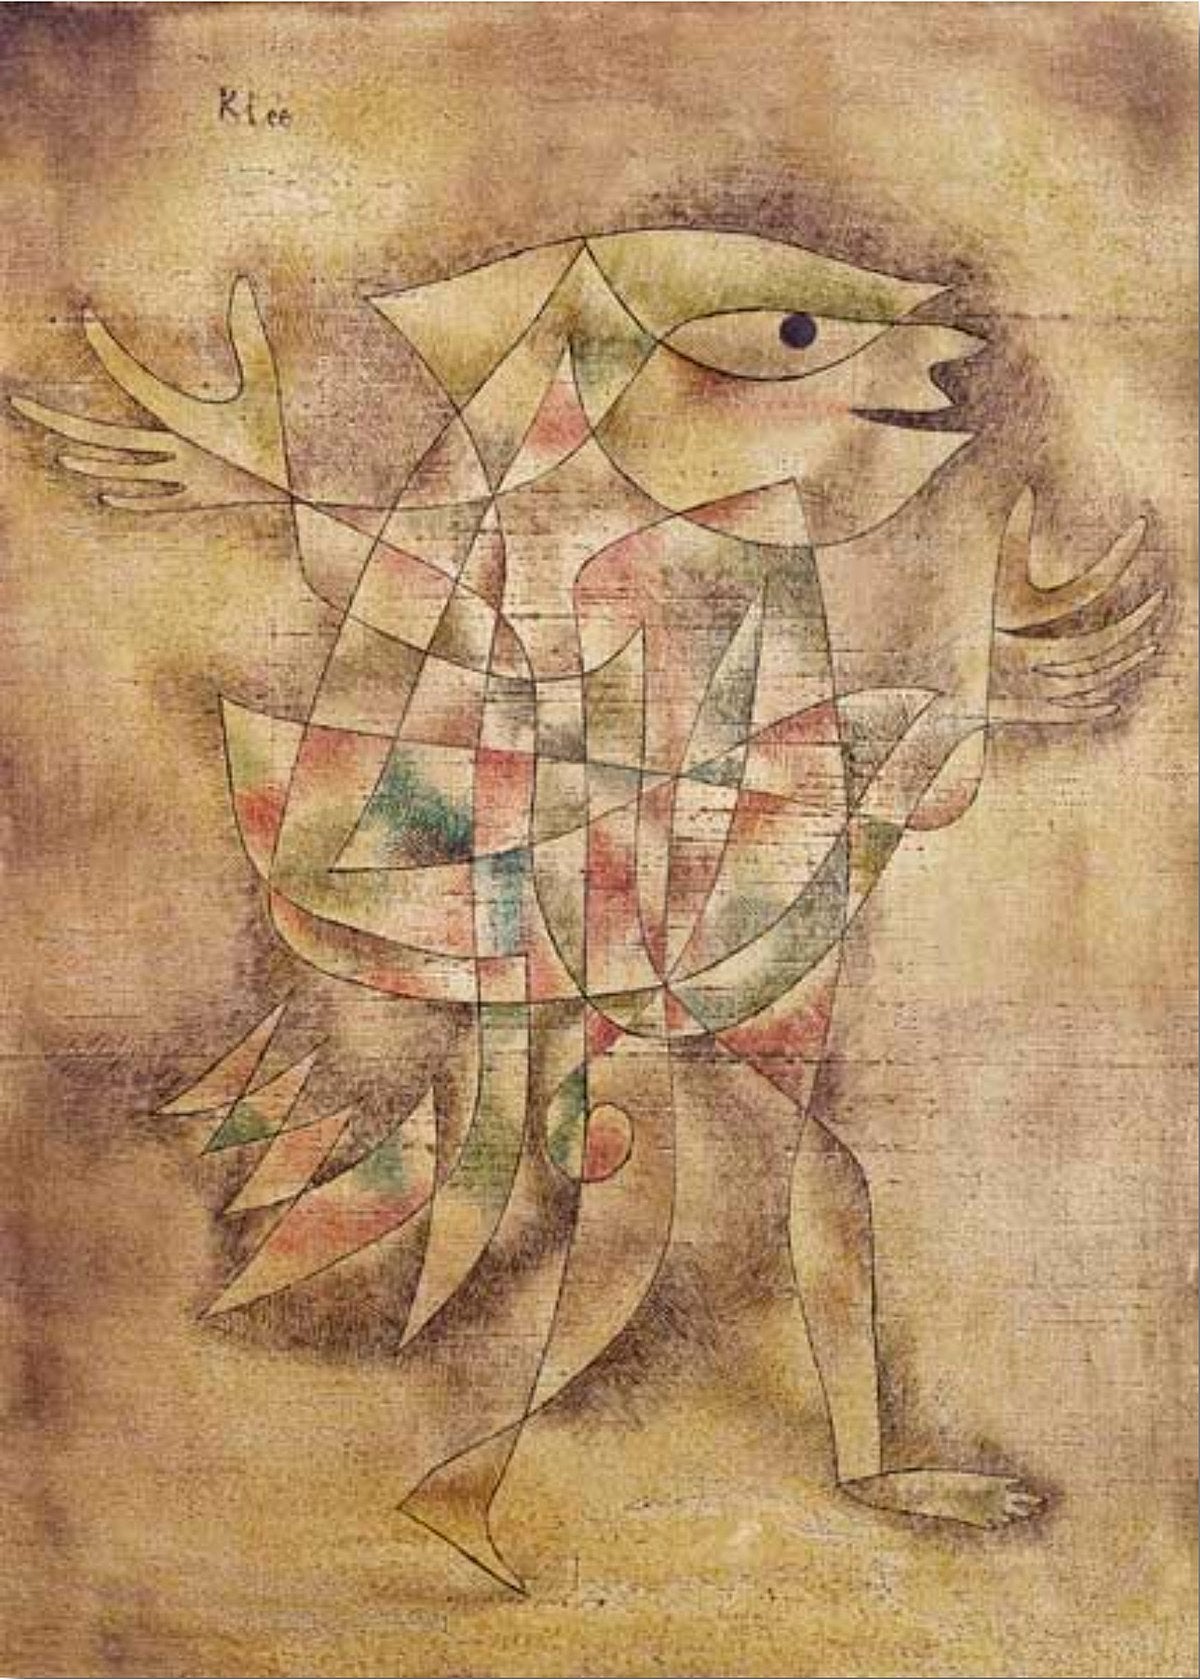 Fou en transe - Paul Klee